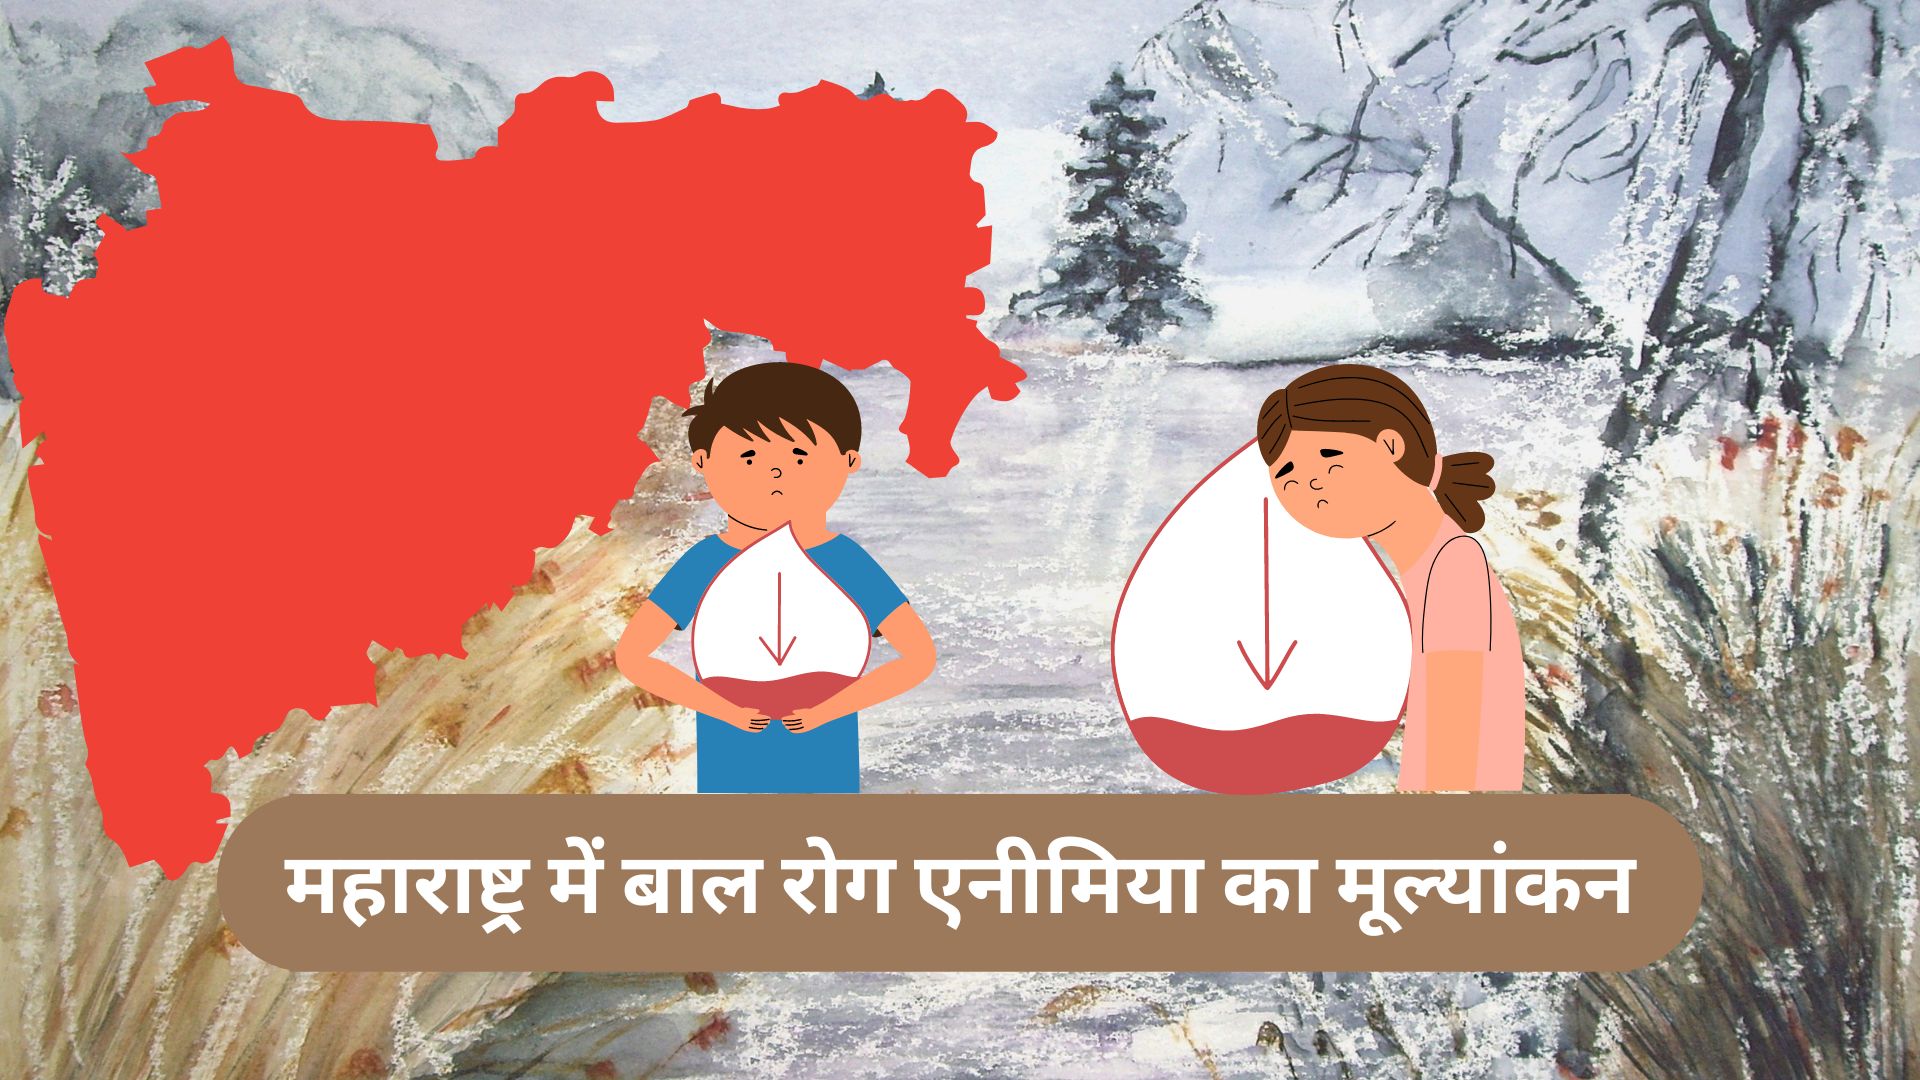 महाराष्ट्र की ग्रामीण आबादी में बाल रोग एनीमिया का मूल्यांकन